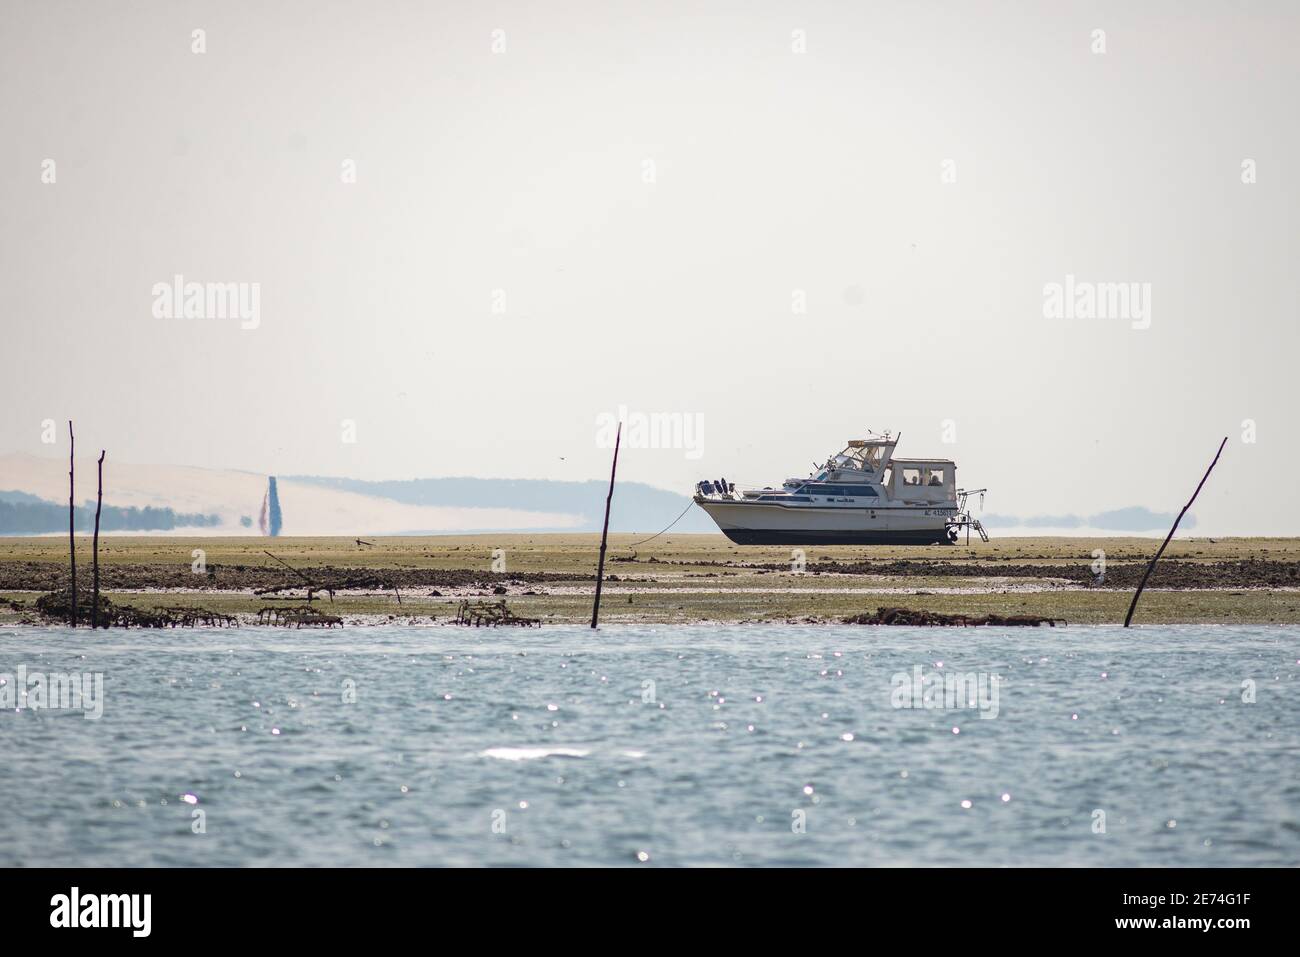 Barco a motor en la bahía de Arcachon, Gironde, Francia. Durante la marea baja amarrados barcos salen del agua Foto de stock